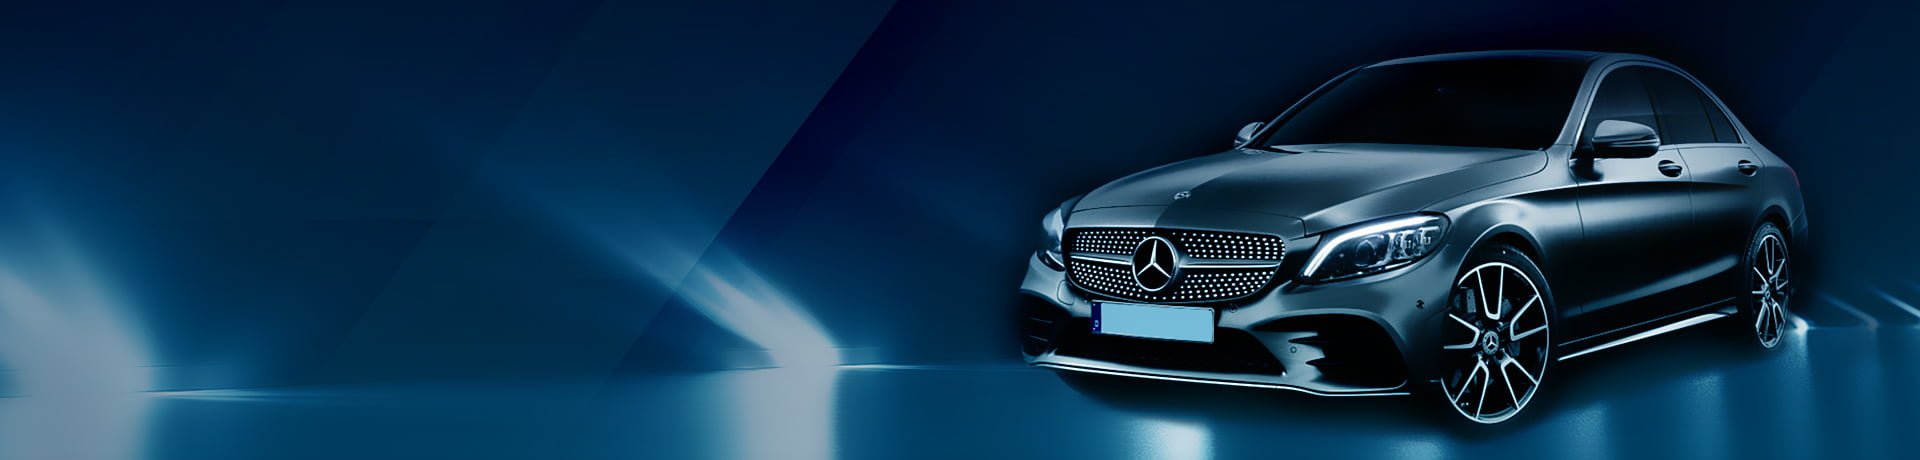 Mercedes - leasing samochodu osobowego